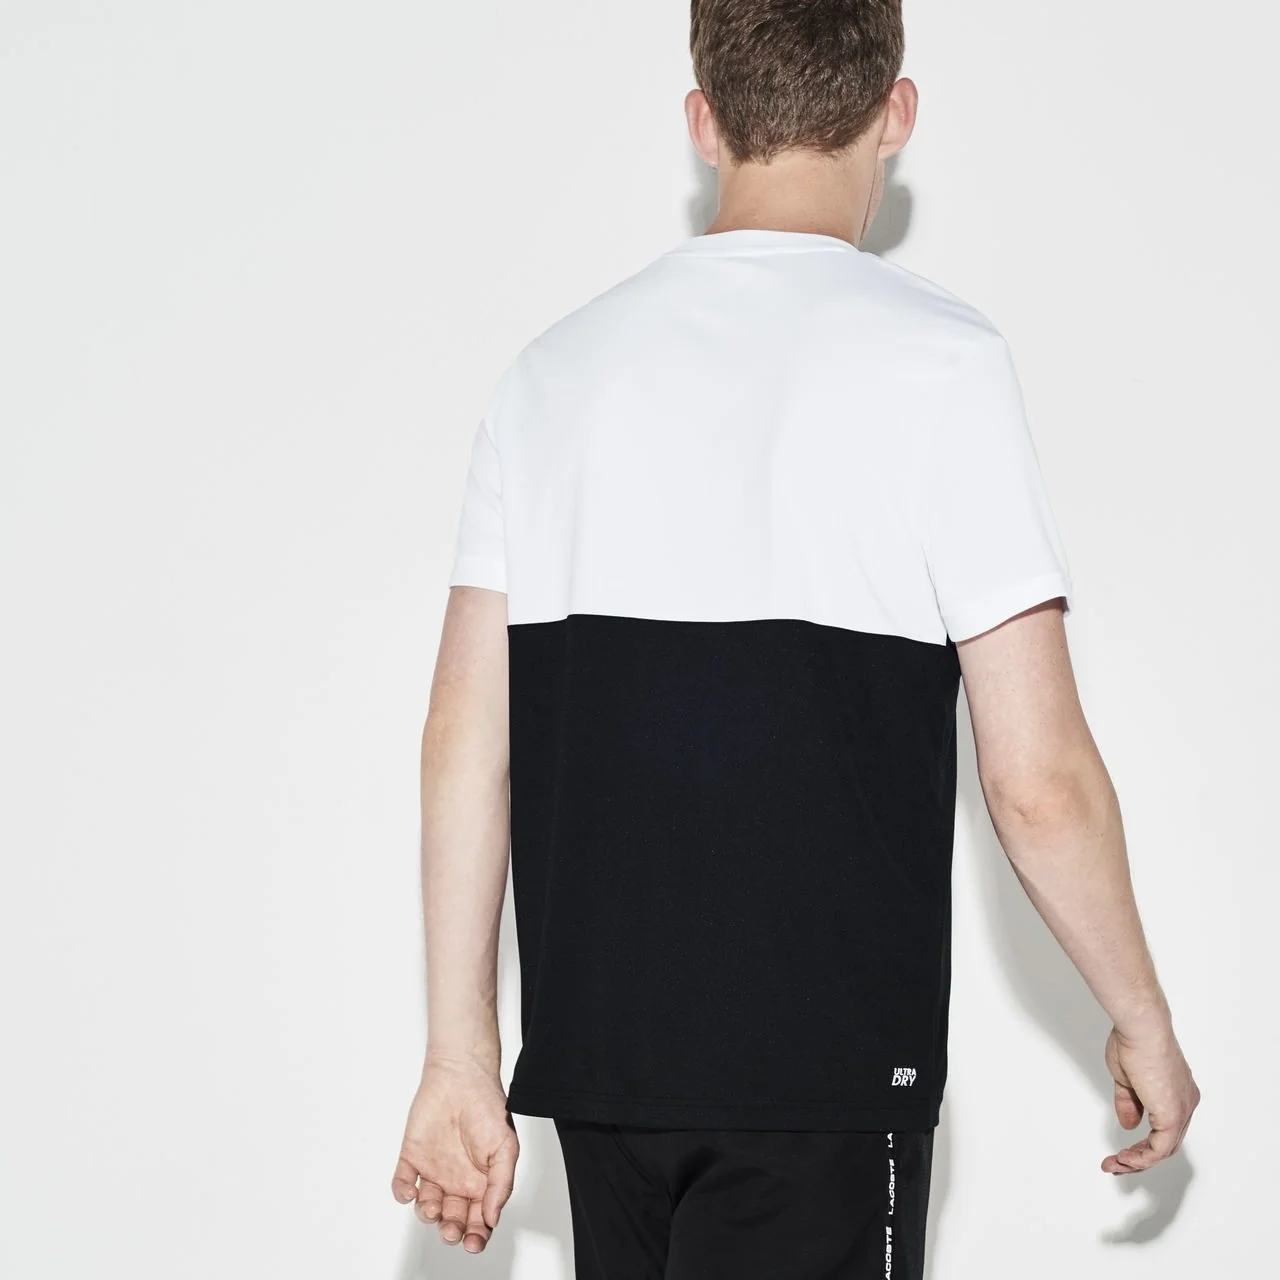 Lacoste Men's Colorblock Technical Piqué T-shirt White/Navy